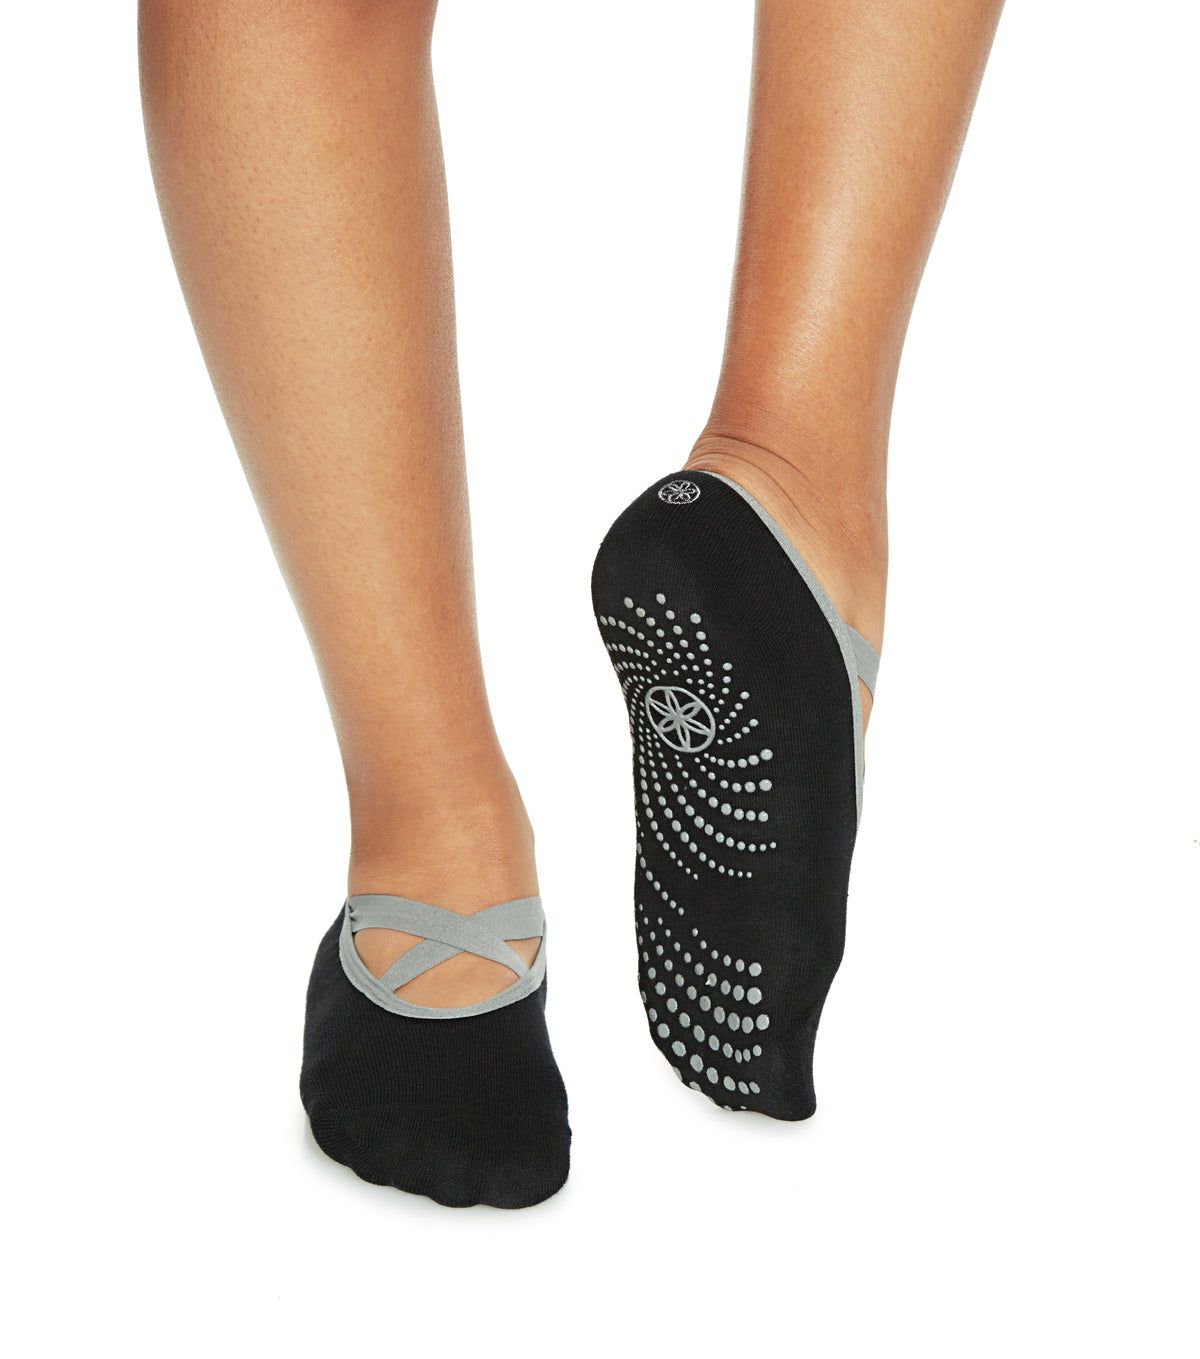 Womens Yoga Socks Non Slip Pilates Massage Sport Ankle Socks Grip Gym